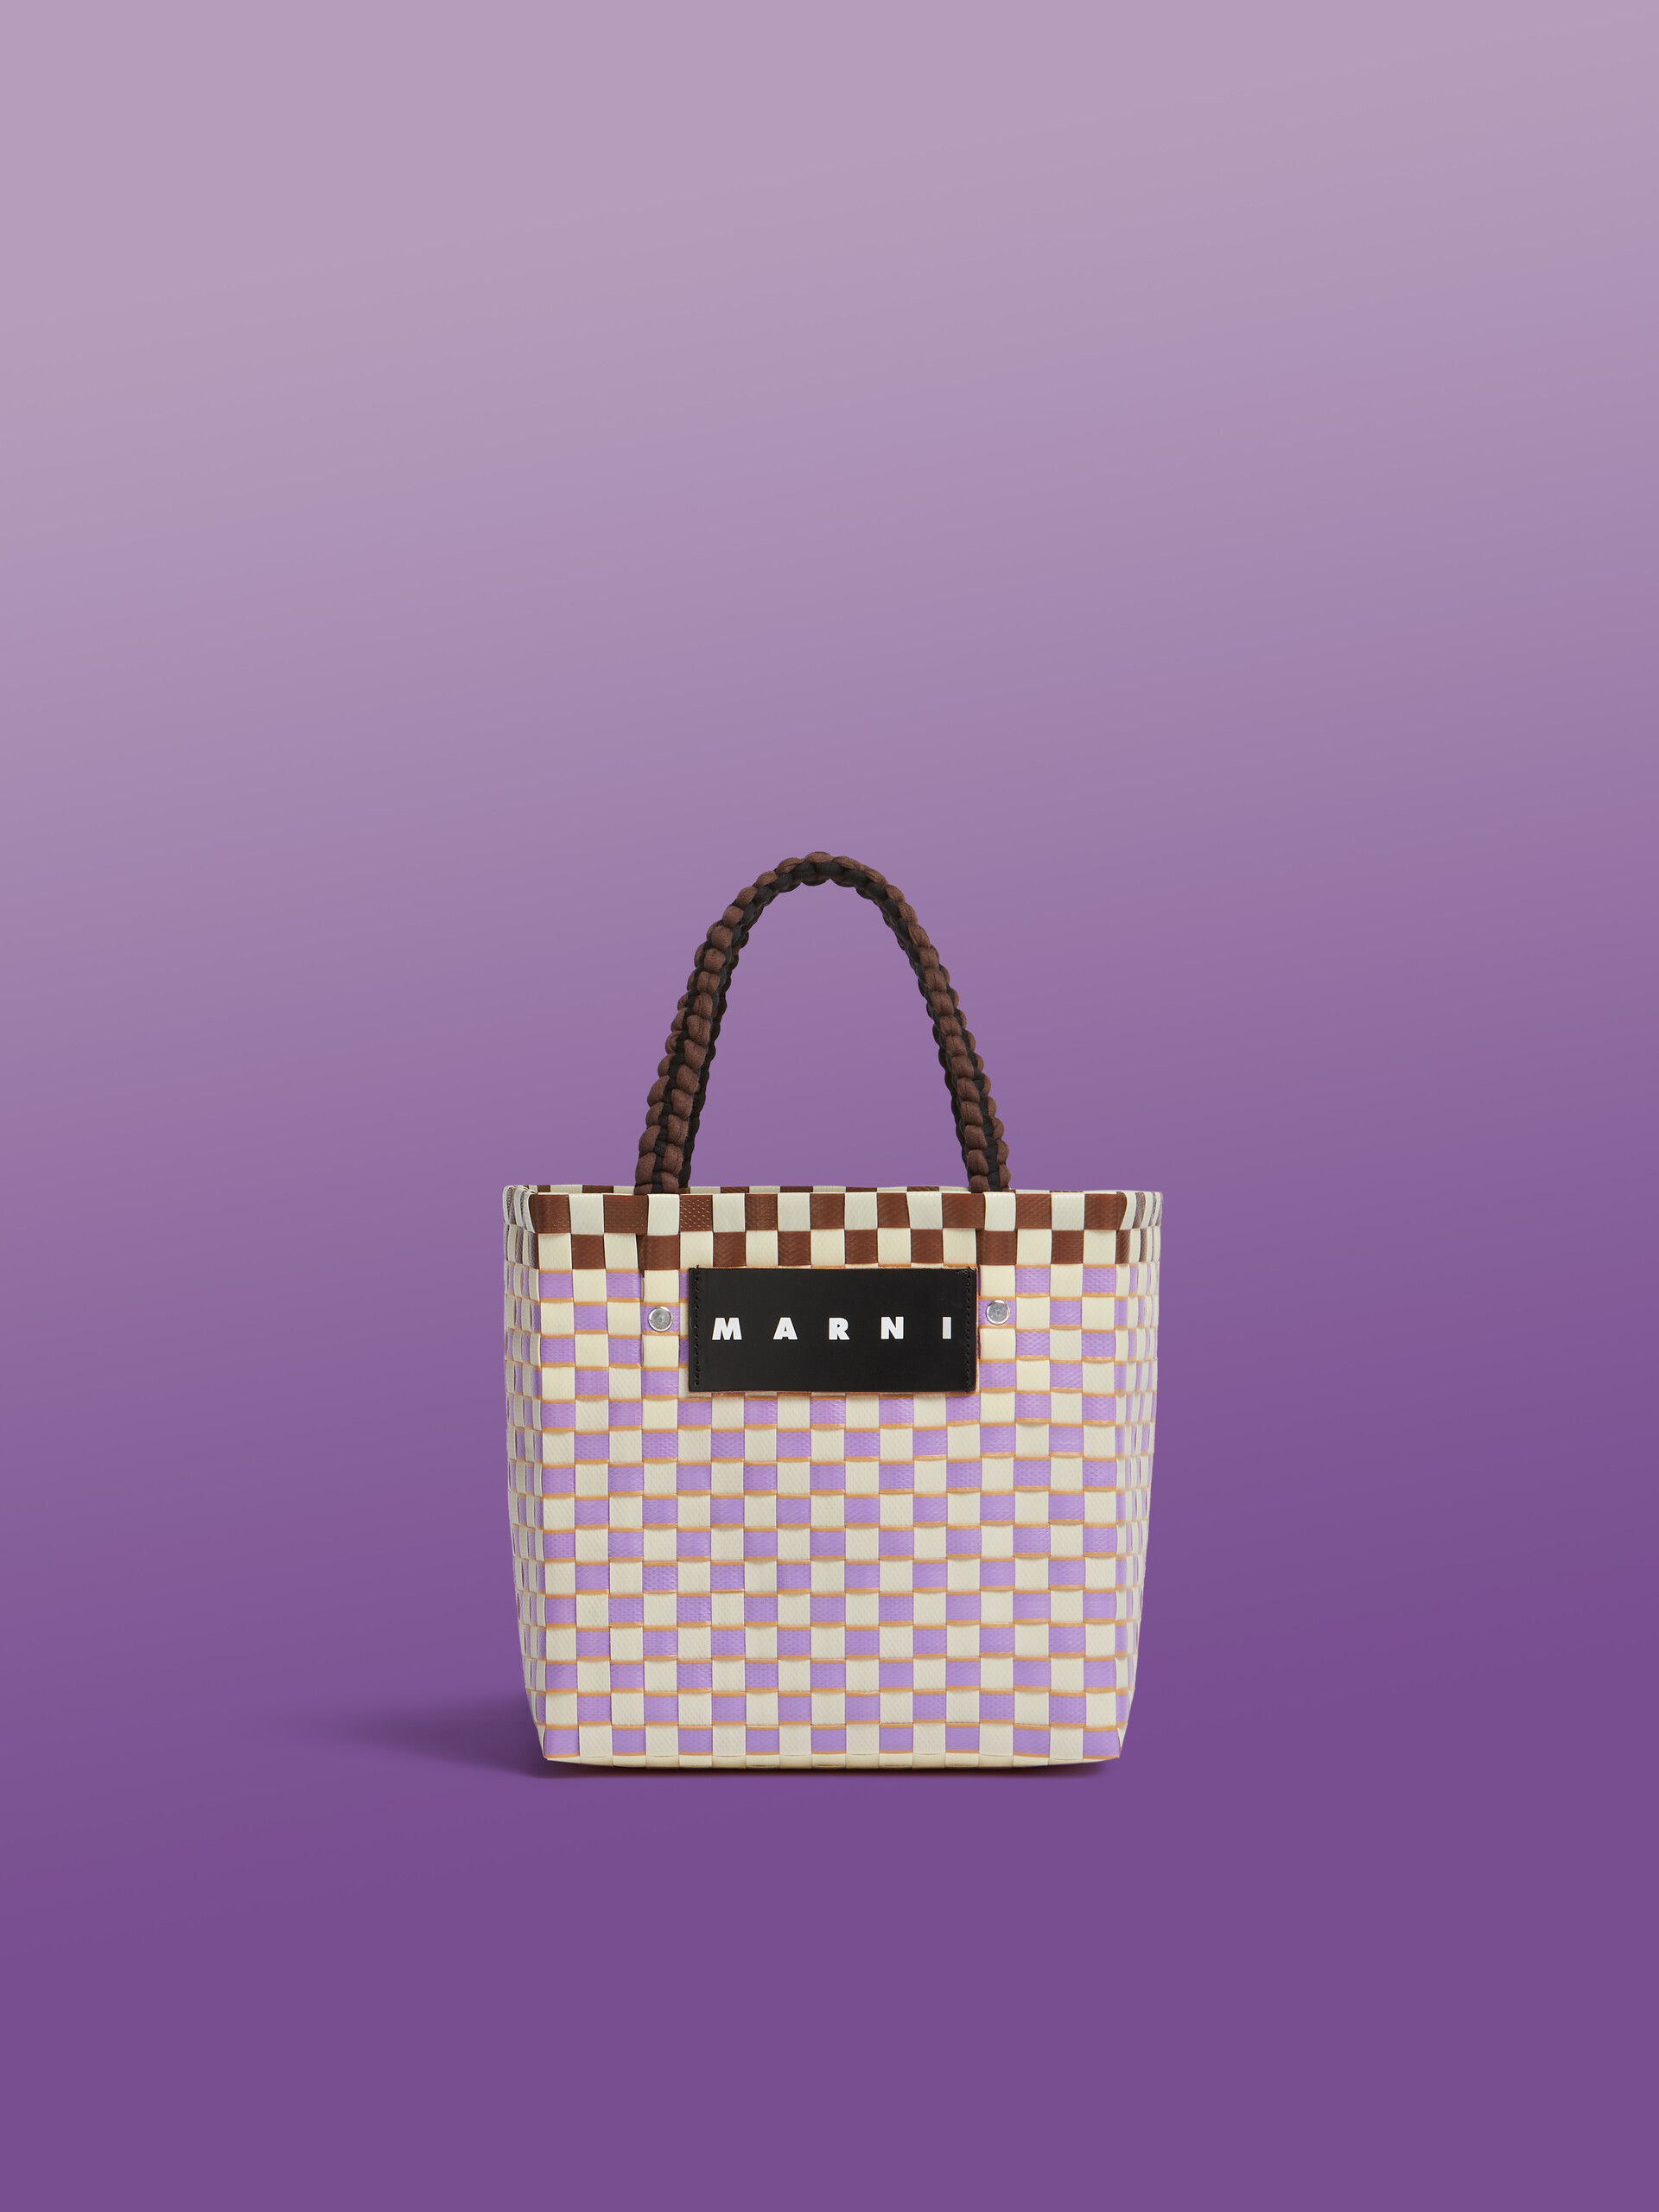 Marni, Bags, Marni Handbag Woman Lilac